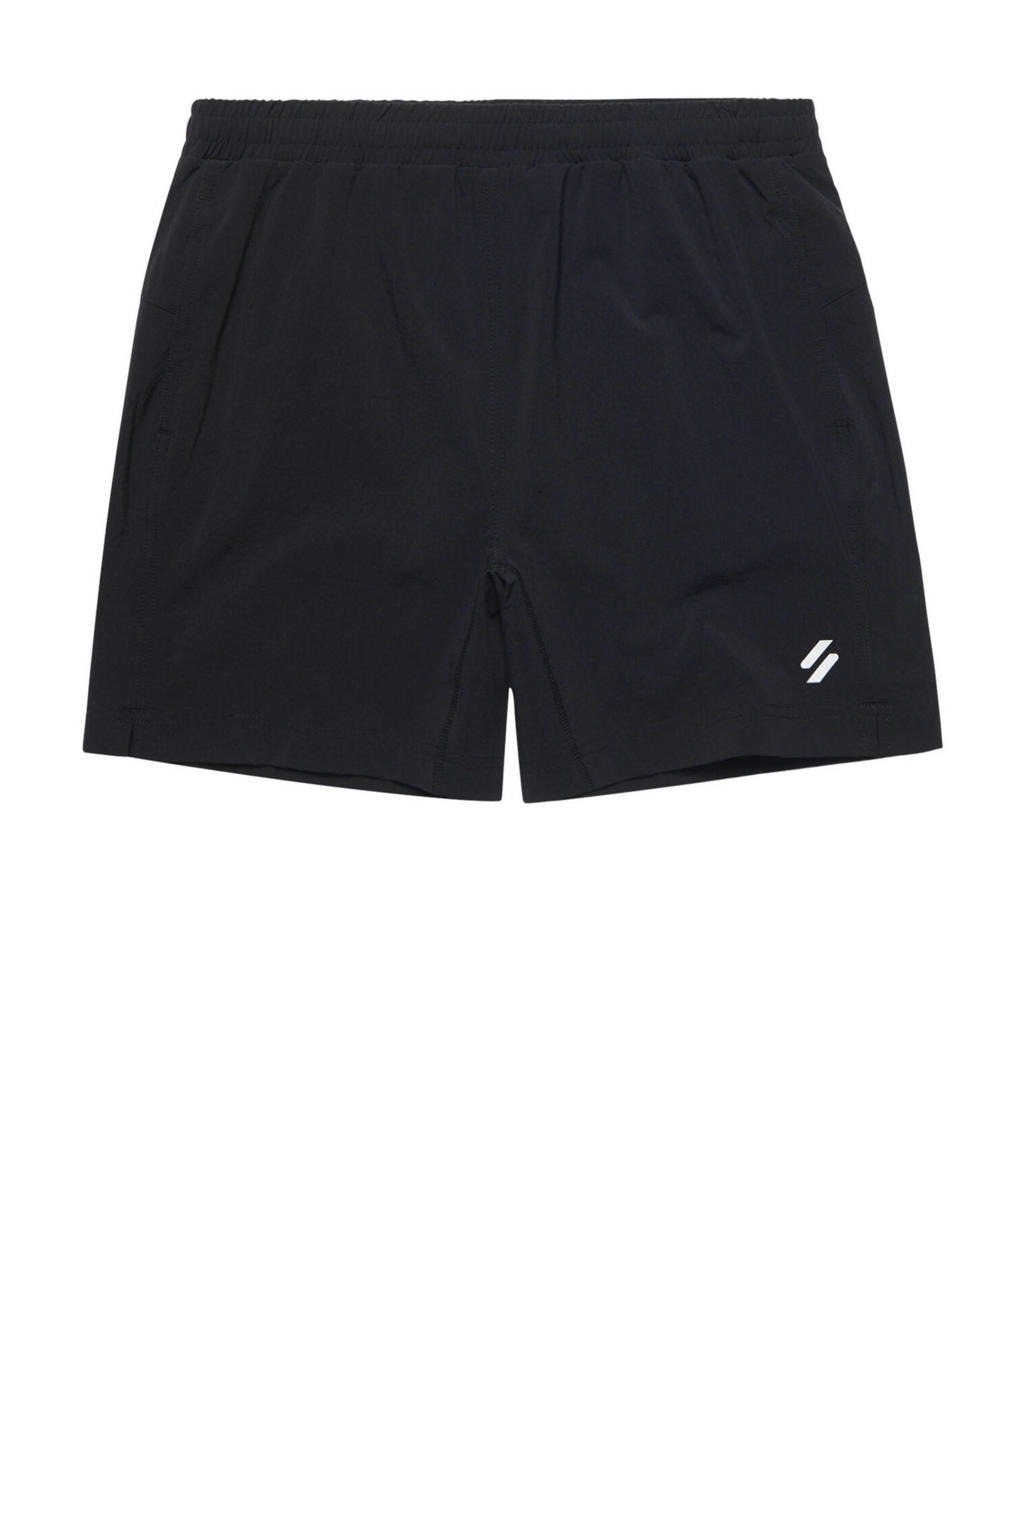 Zwarte heren Superdry Sport sportshort van nylon met regular fit, elastische tailleband met koord en logo dessin